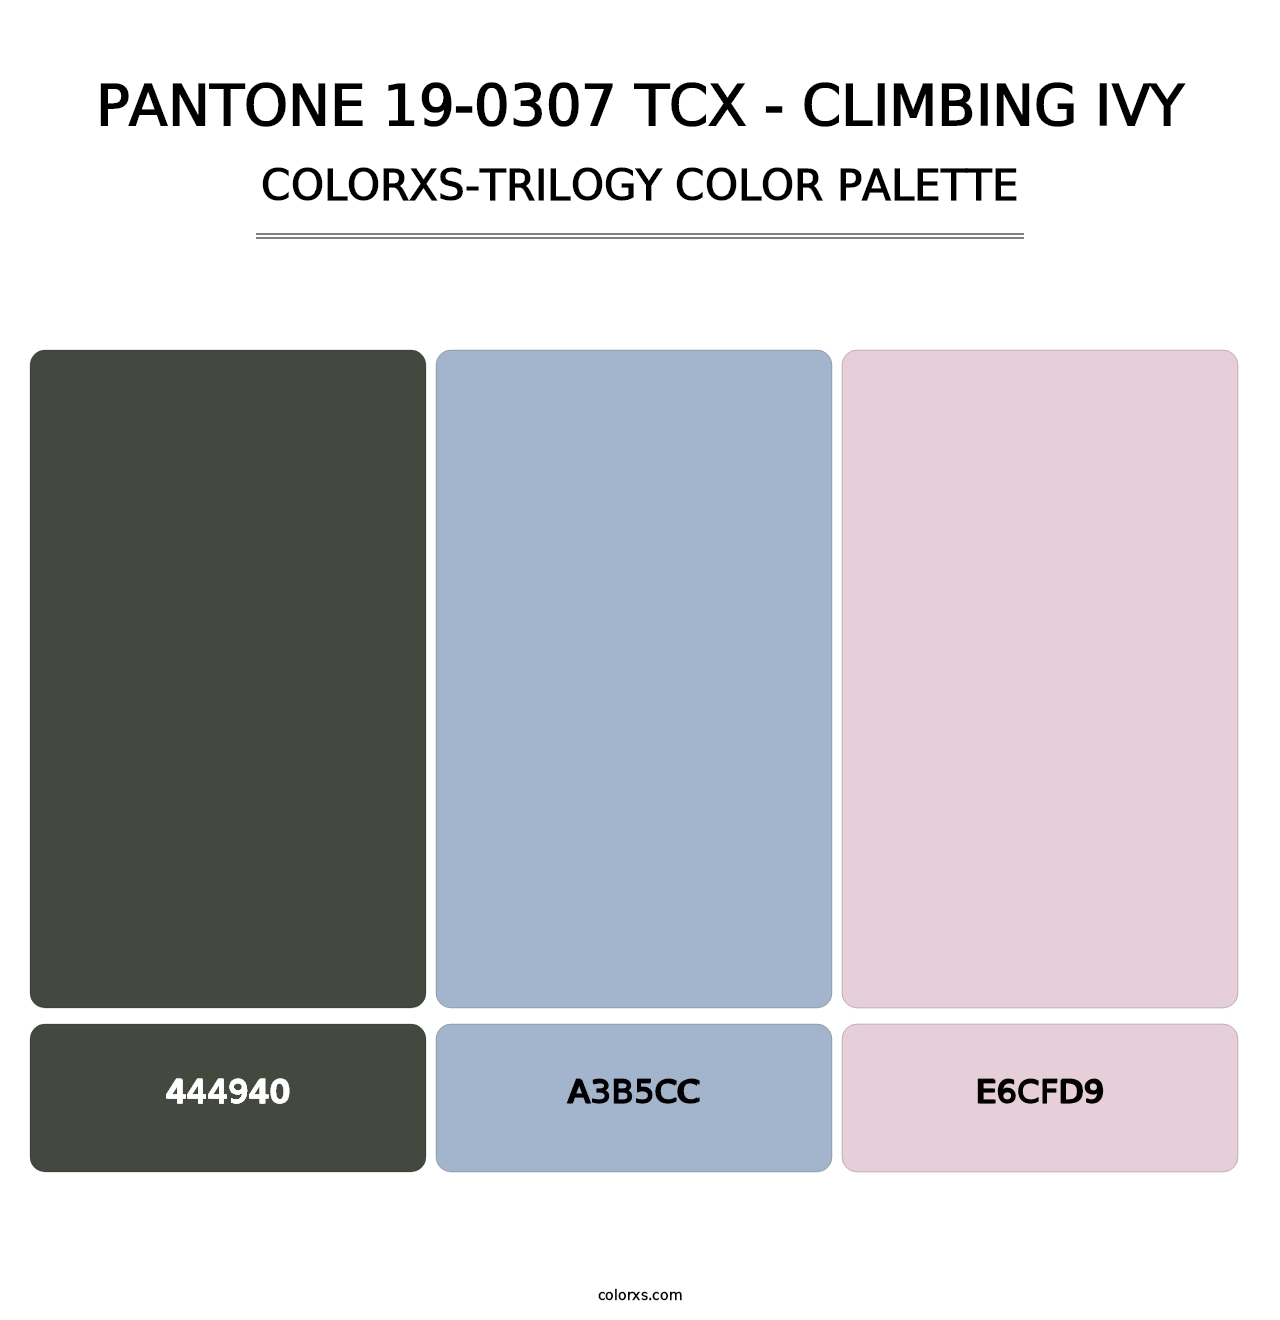 PANTONE 19-0307 TCX - Climbing Ivy - Colorxs Trilogy Palette